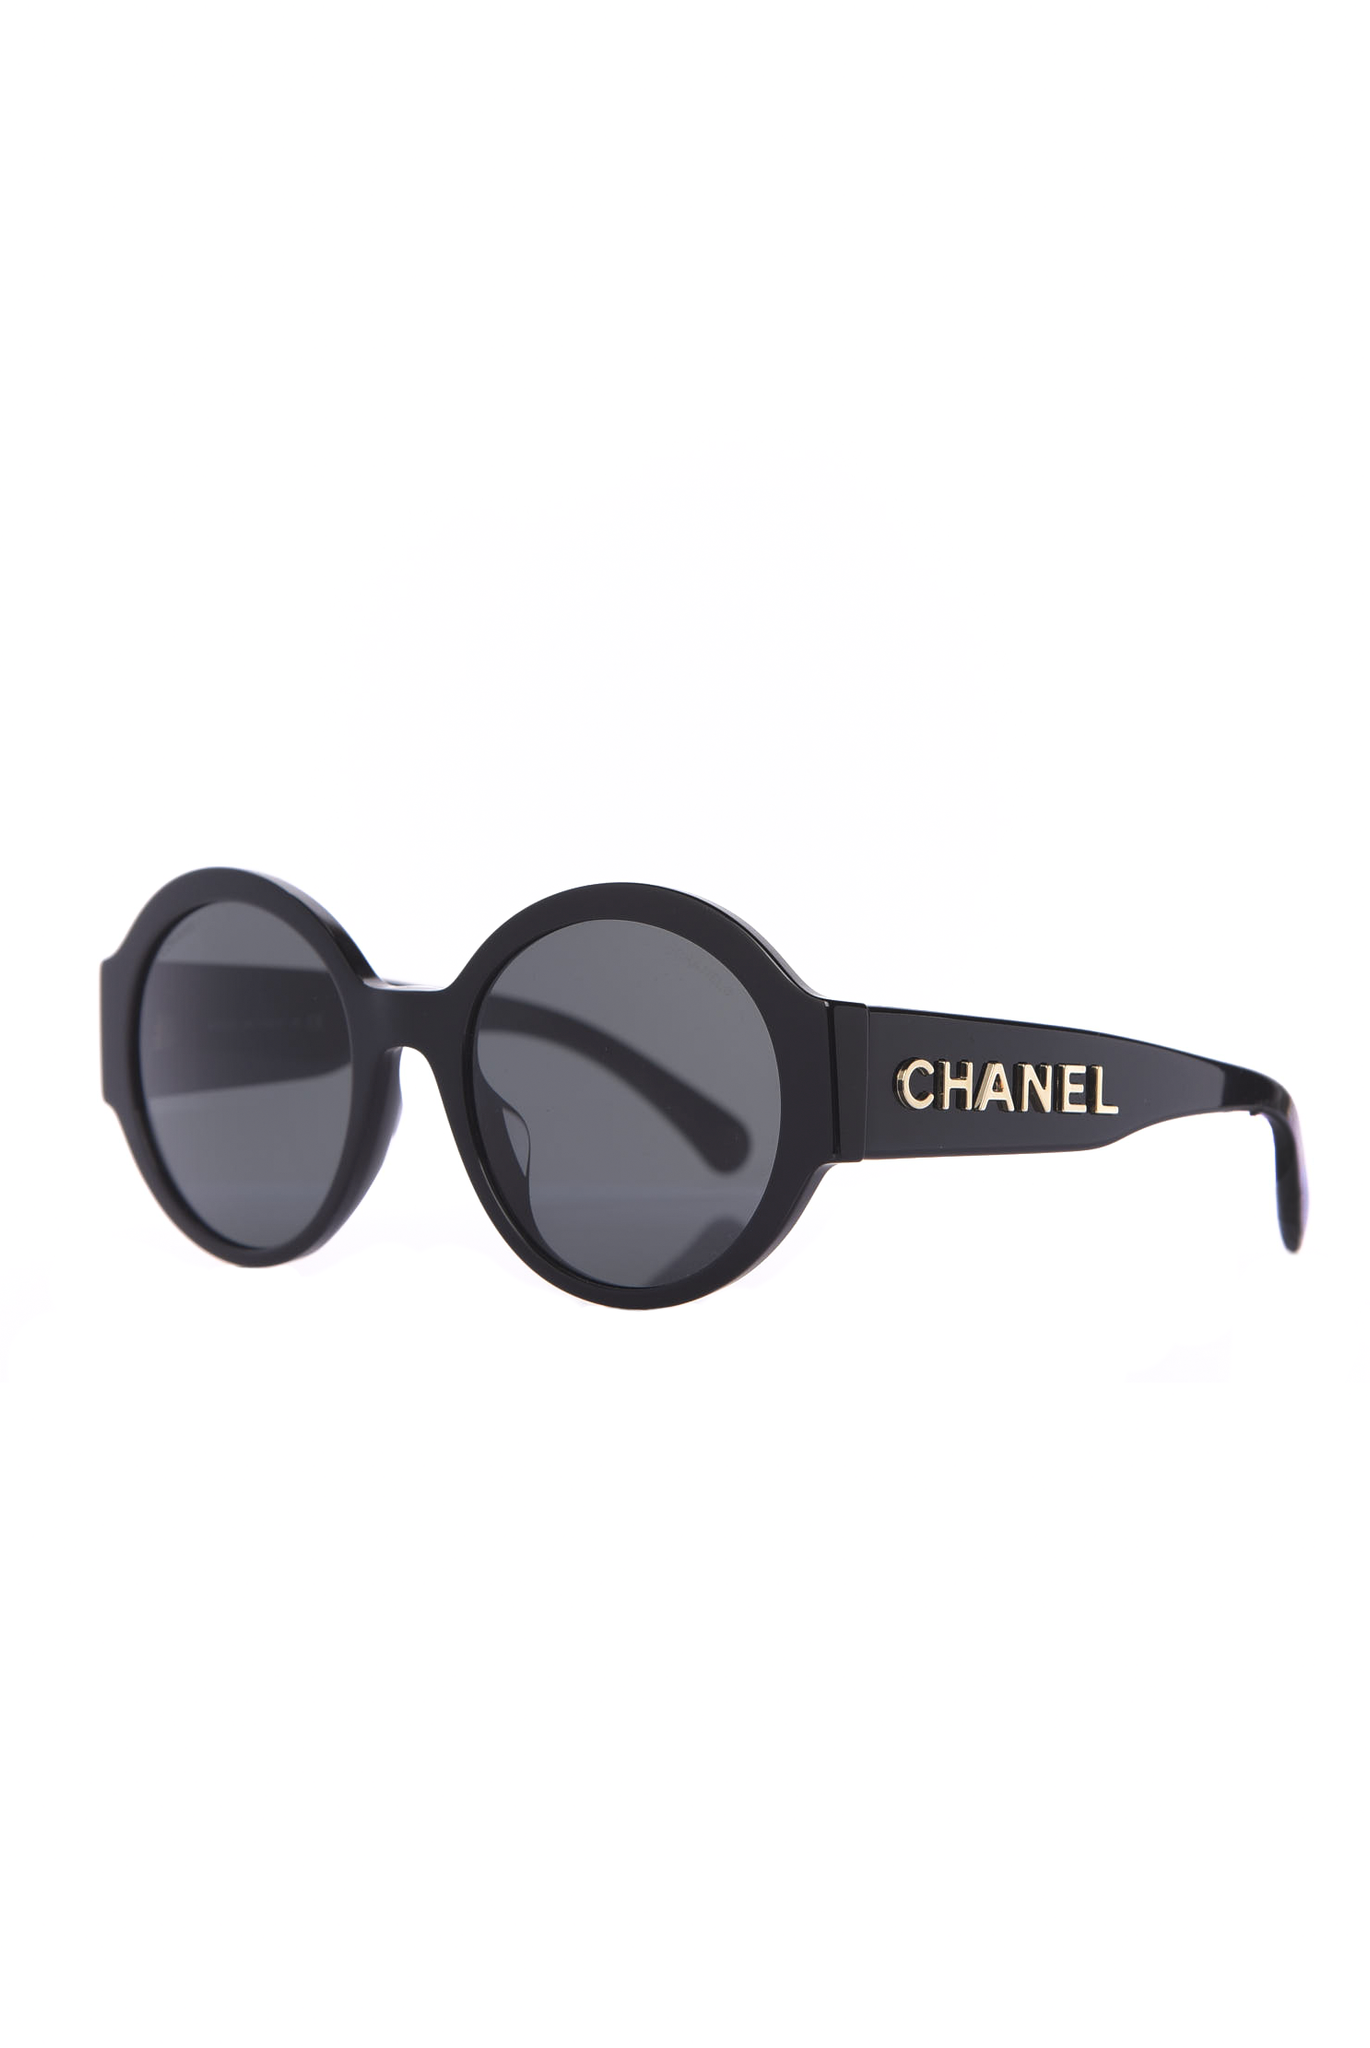 Chanel Sunglasses New Authentic 5484 c 760/S8 Black Gray Square